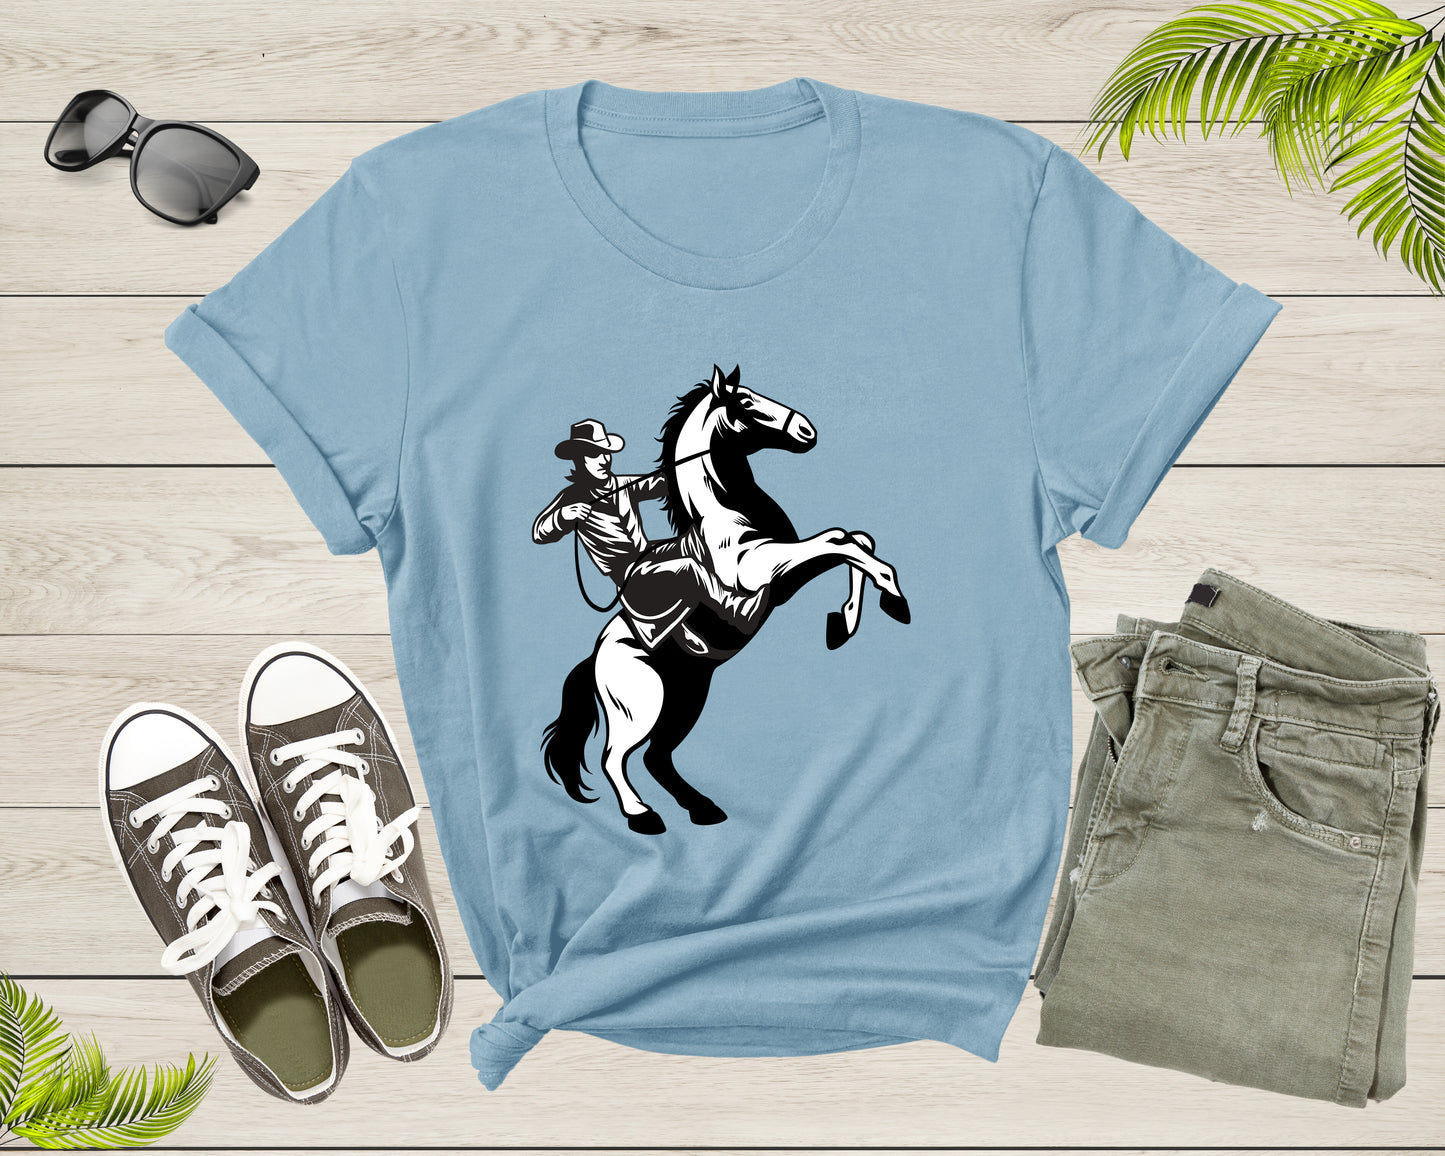 Cool Horse Pony Lover Gift Shirt For Men Women Kids Girls Boys Aesthetic Cowboy Horseback Rider Tshirt Graphic Sunset Silhouette T-shirt